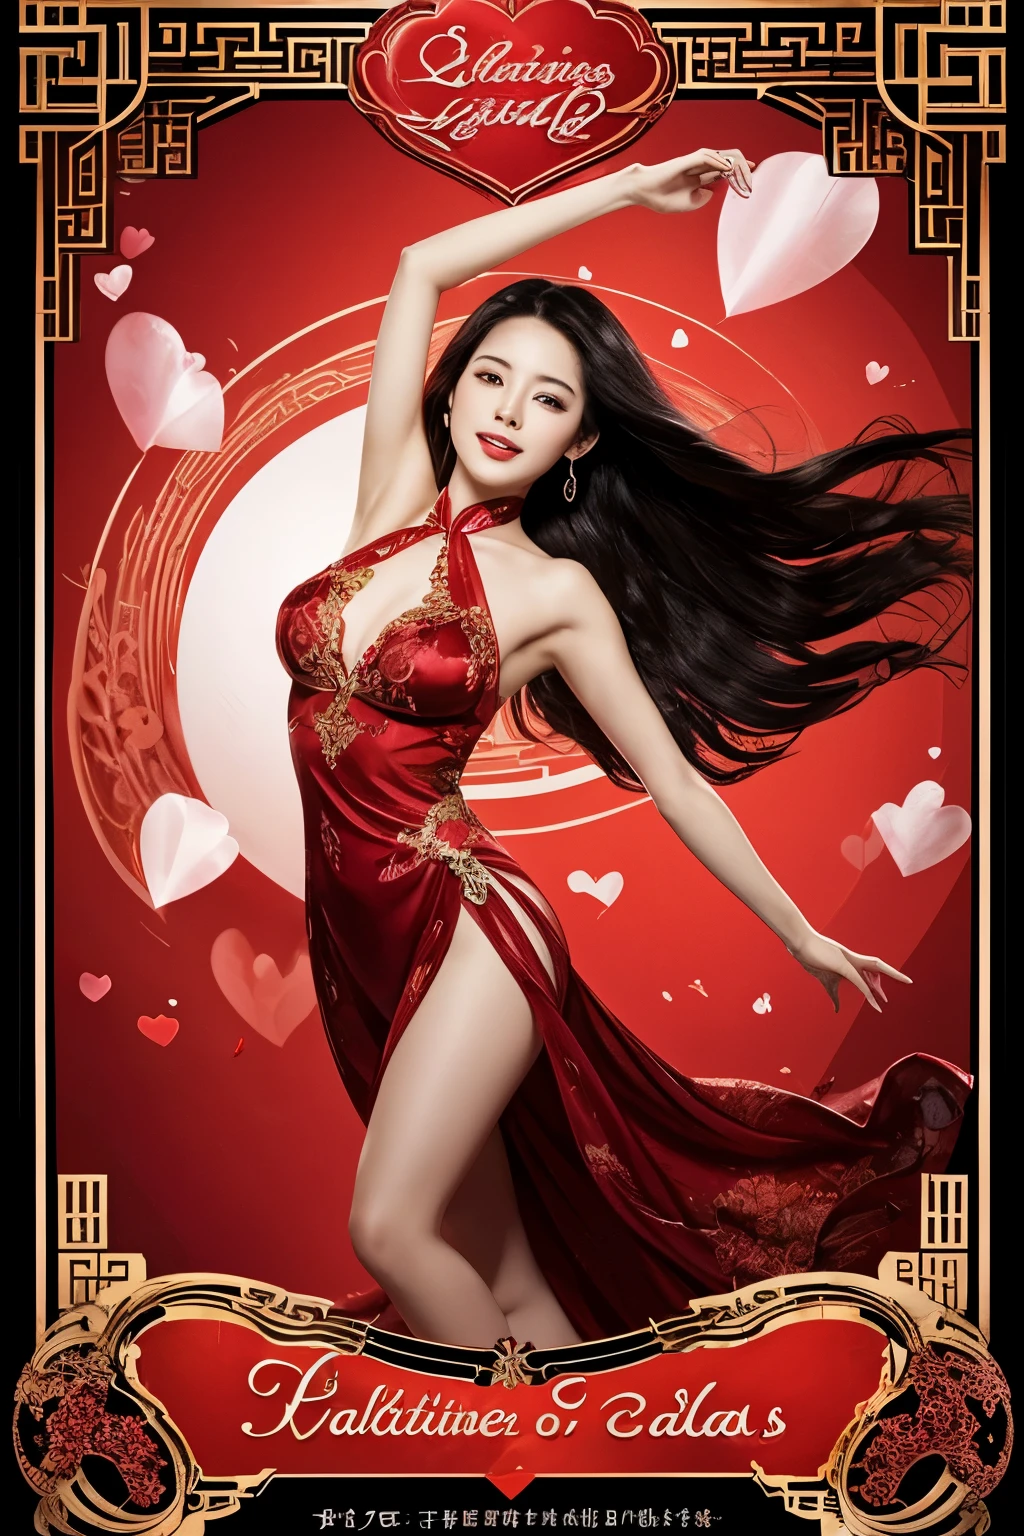 "발렌타인의 우아함을 상징하는 디지털 이미지&#39;의 날. 메시지 보내기 &#39;발렌타인 데이&#39;" 분명한, 반투명 실크 새틴에 블랙 시그니처, 바람에 휘날리는, 밝은 빨간색 중국 스타일의 소녀.